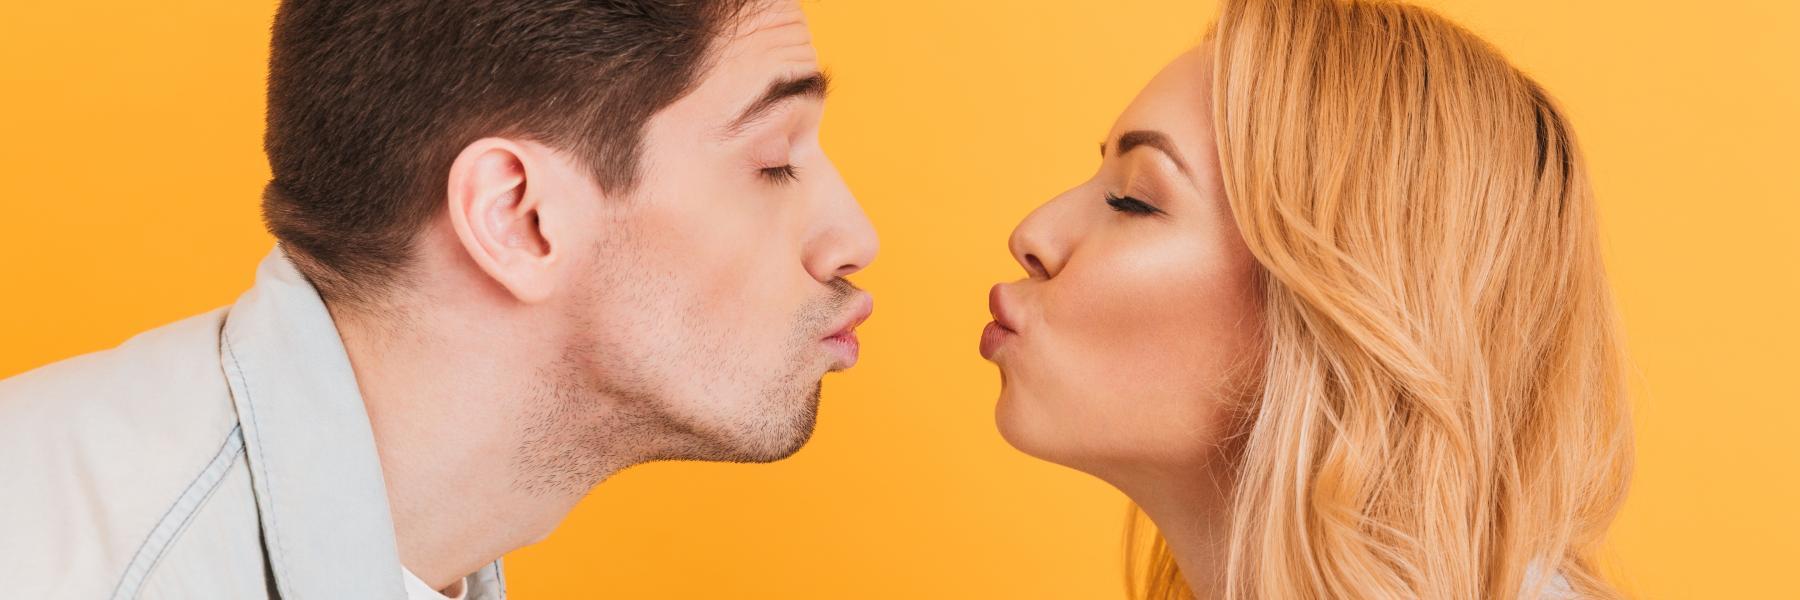 بعد أن تعرف فوائد التقبيل الآتية، لن تخرج من بيتك الّا بعد تقبيل زوجتك